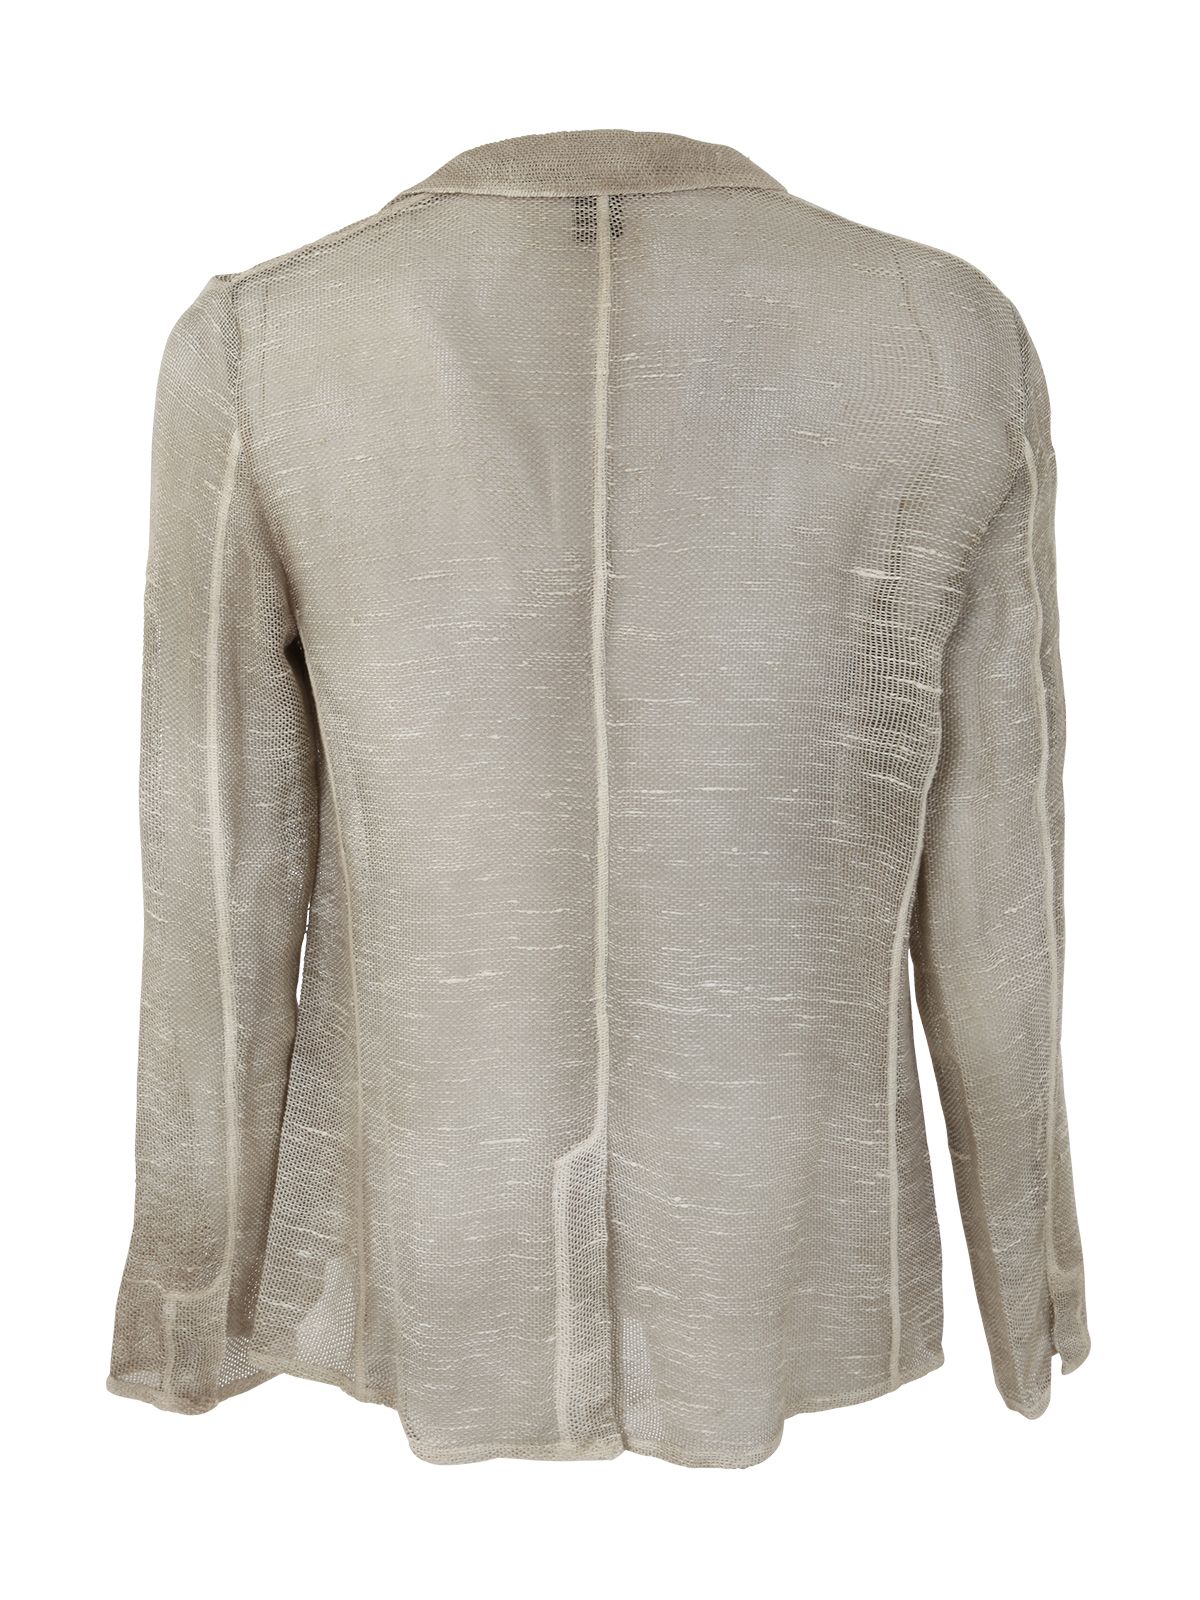 Shop Avant Toi Man Jackets Blazer:  Grey Jacket